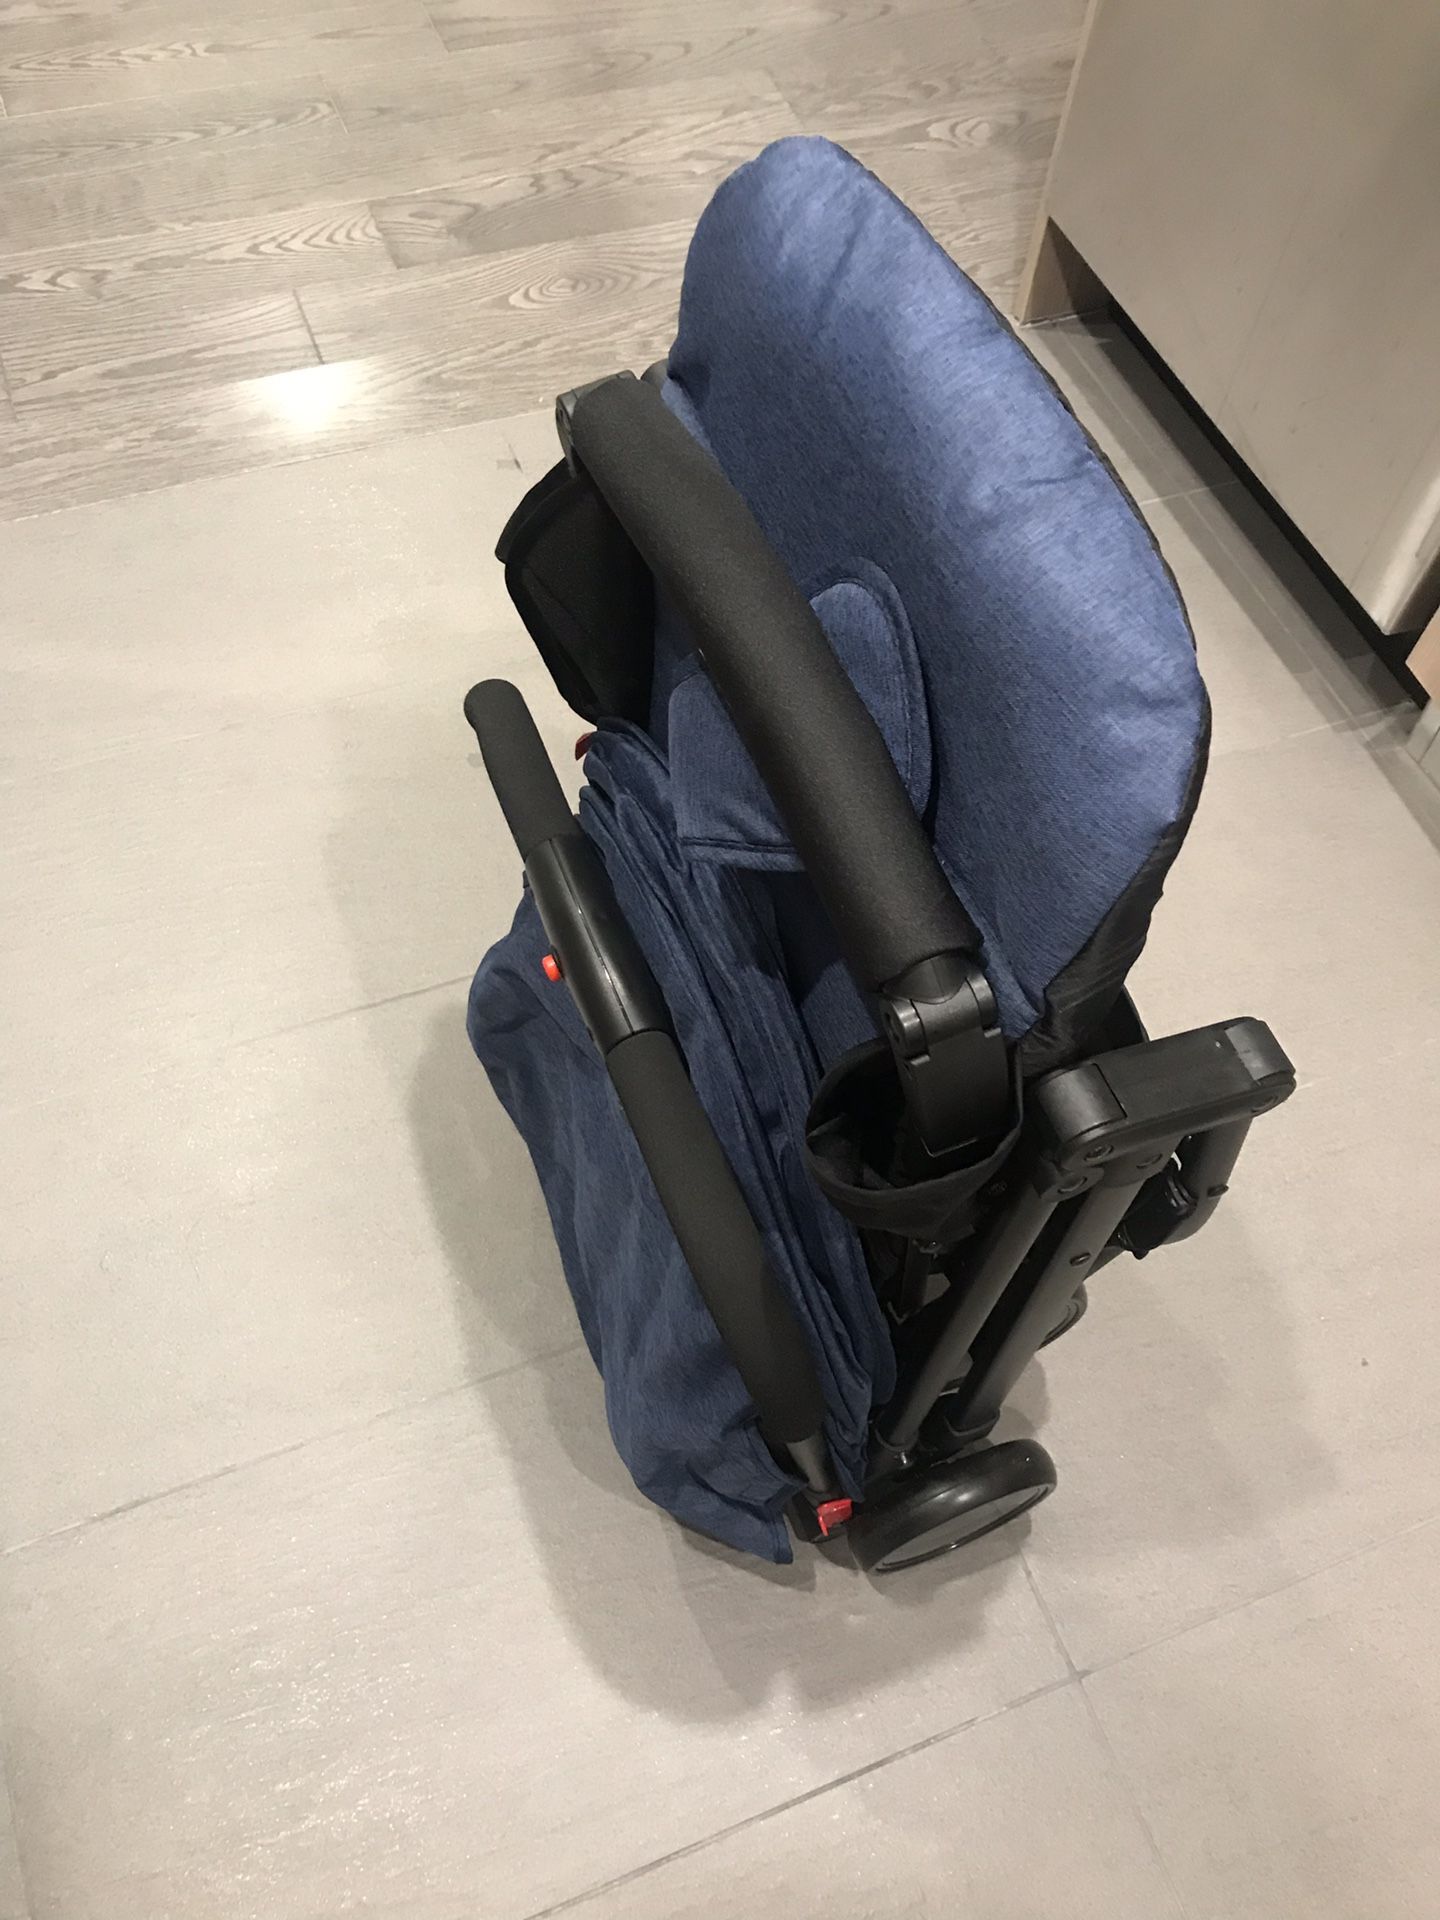 Yoyo babyzen type - Babytime compact stroller